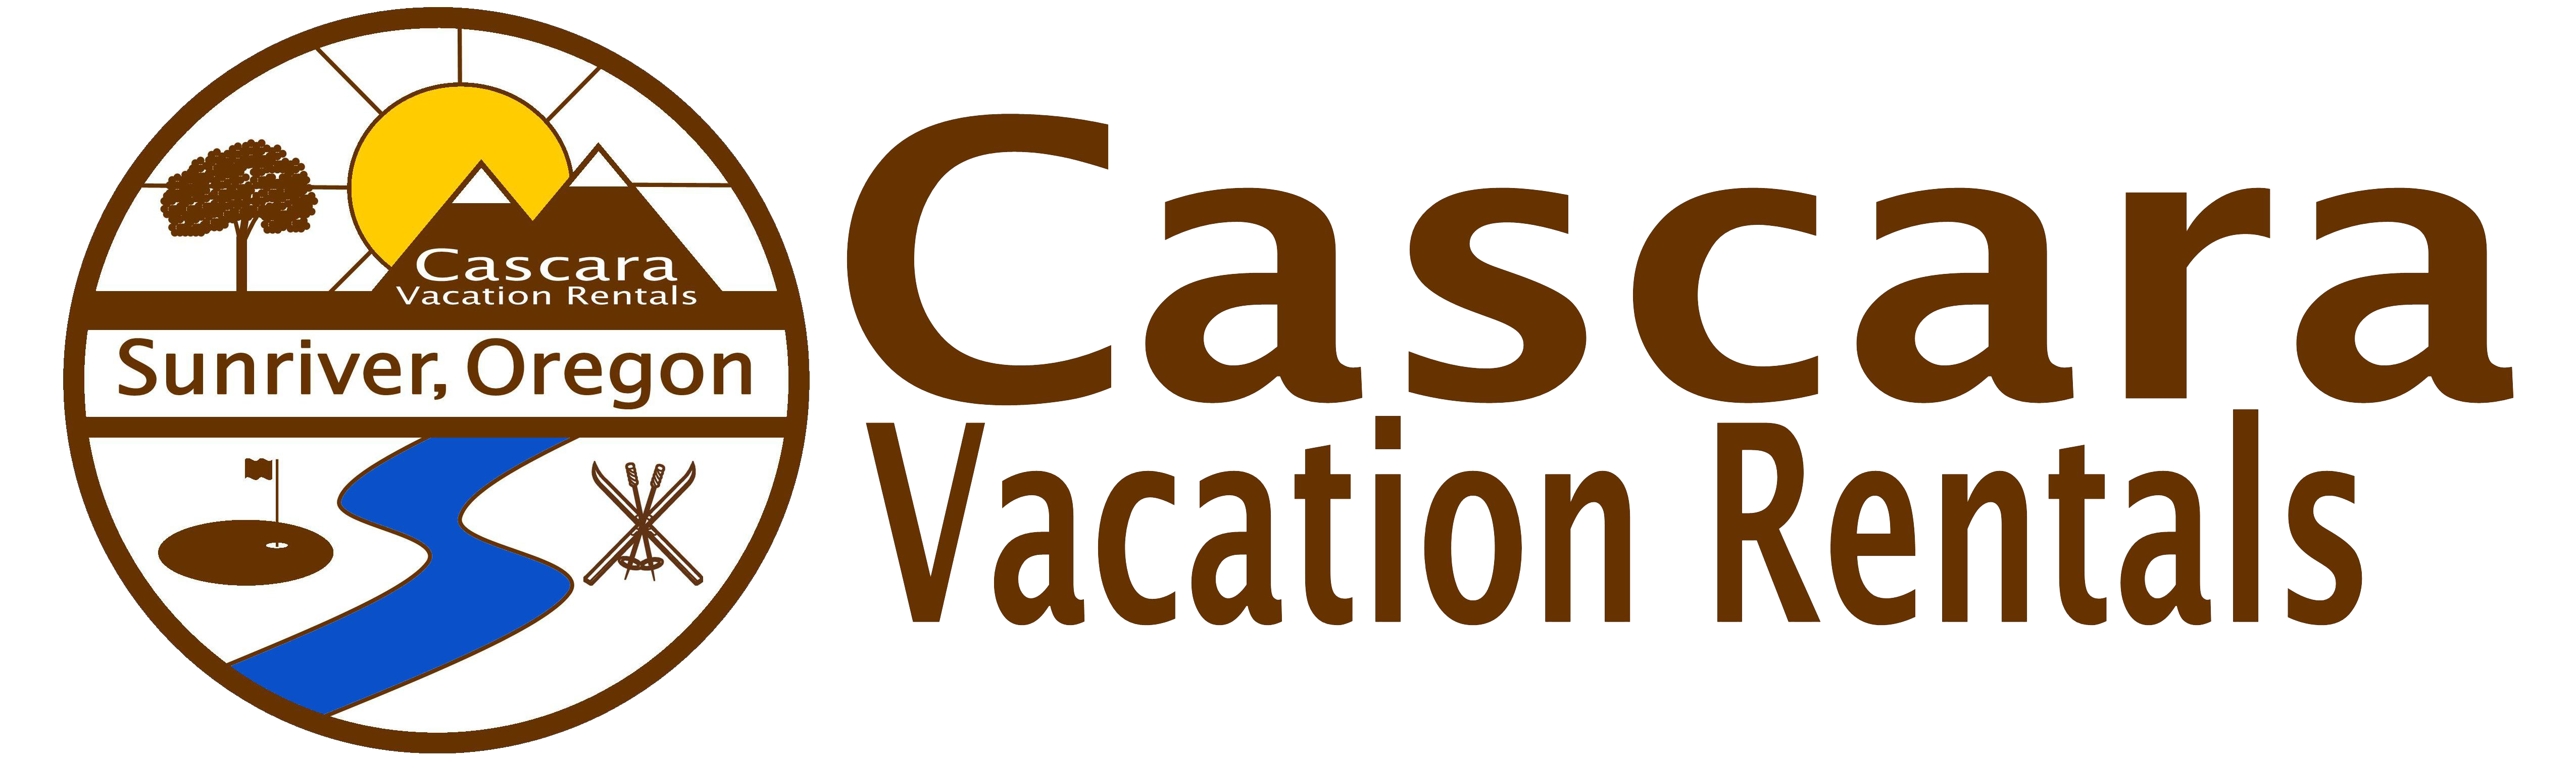 Cascara Vacations